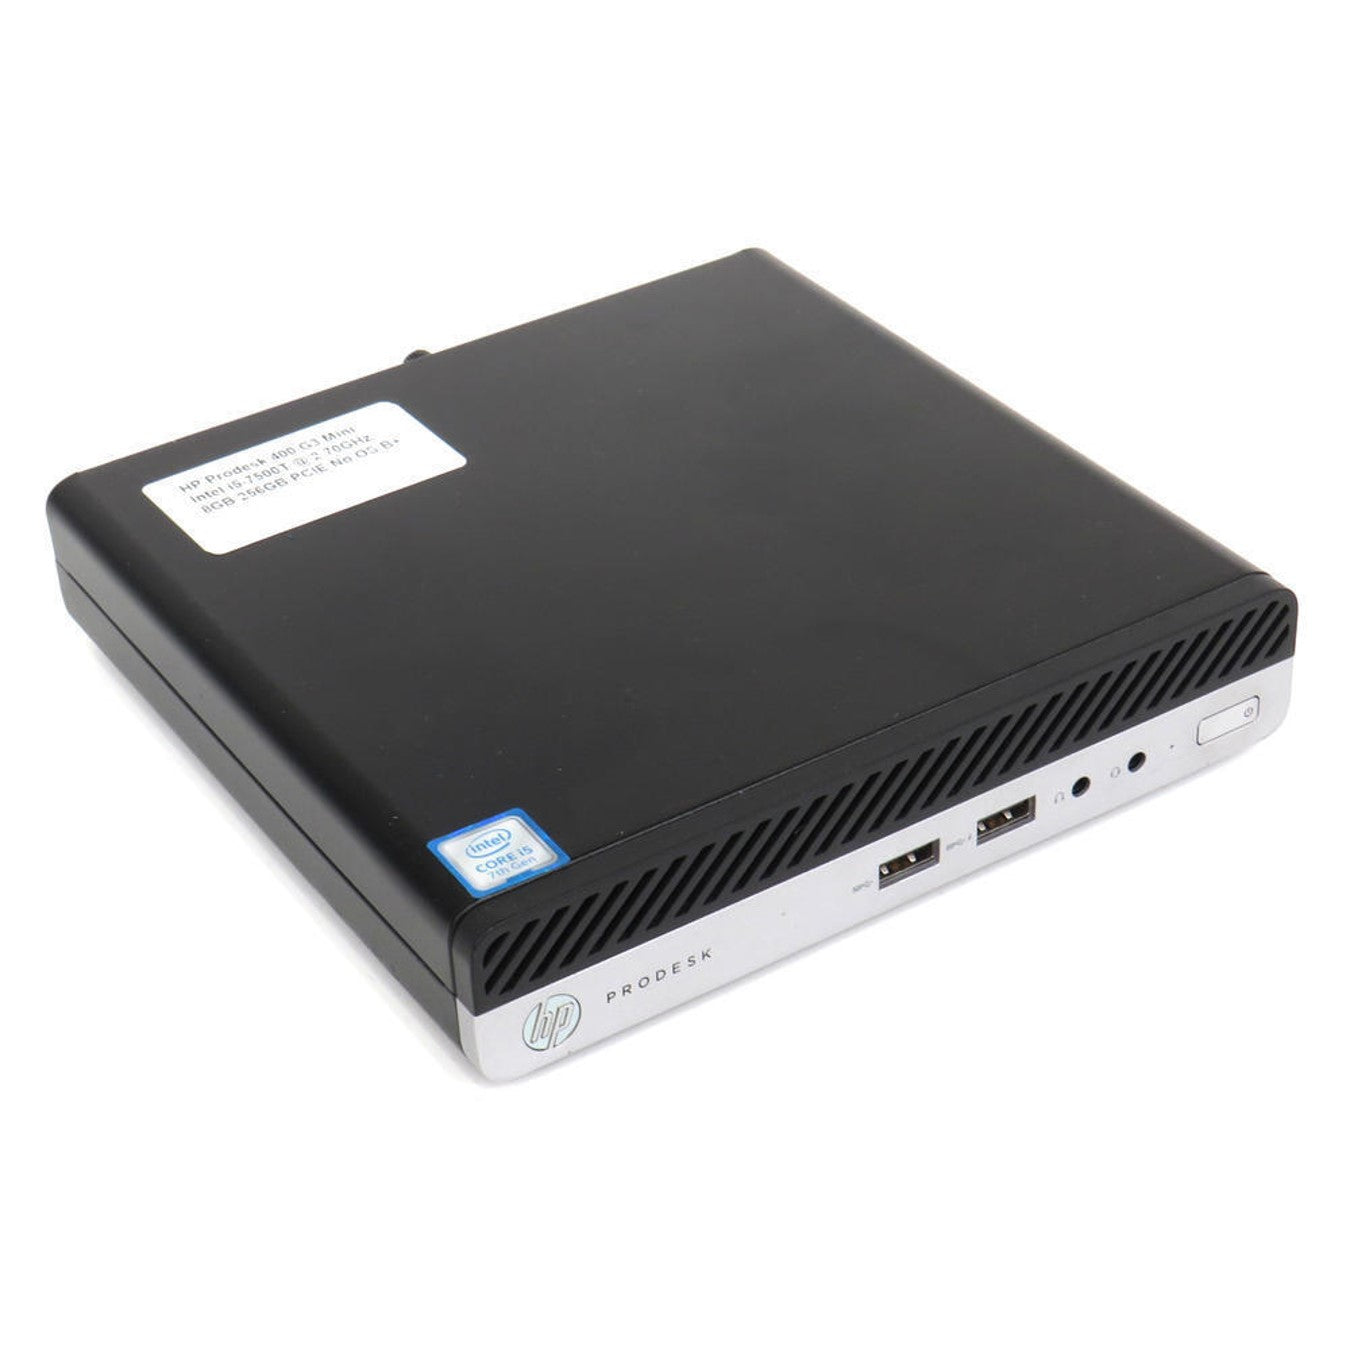 MINI PC HP Prodesk 400 G3 (i5-6ta 8GB 256GB SSD) Reacondicionado Grado A